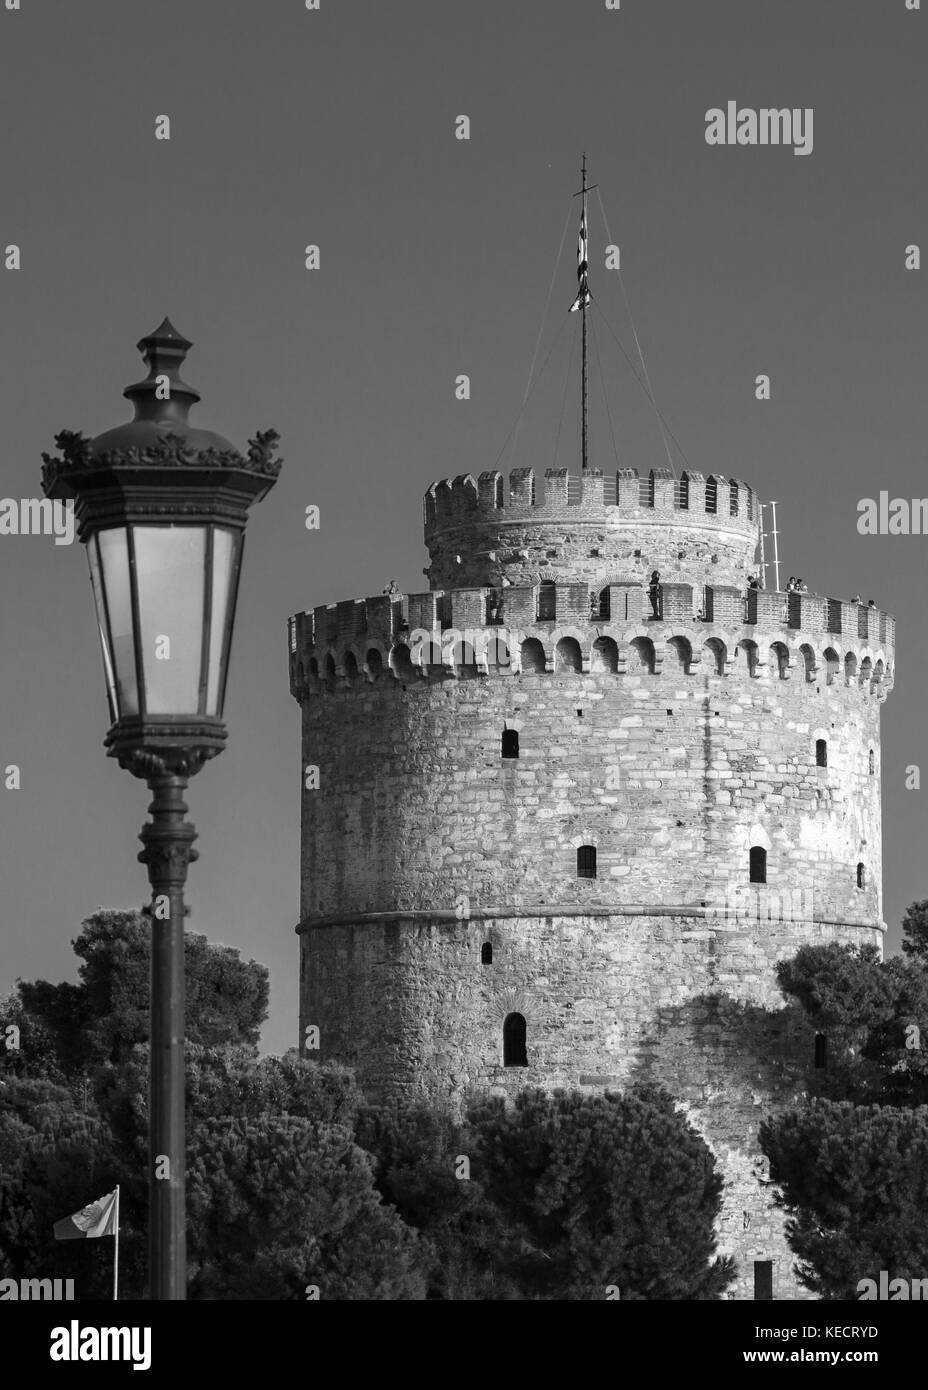 B&w un urbain lanterne en métal avec une seule lampe seulement contre un ciel clair et des principales attractions de la ville de la tour blanche, Grèce, Thessalonique Banque D'Images